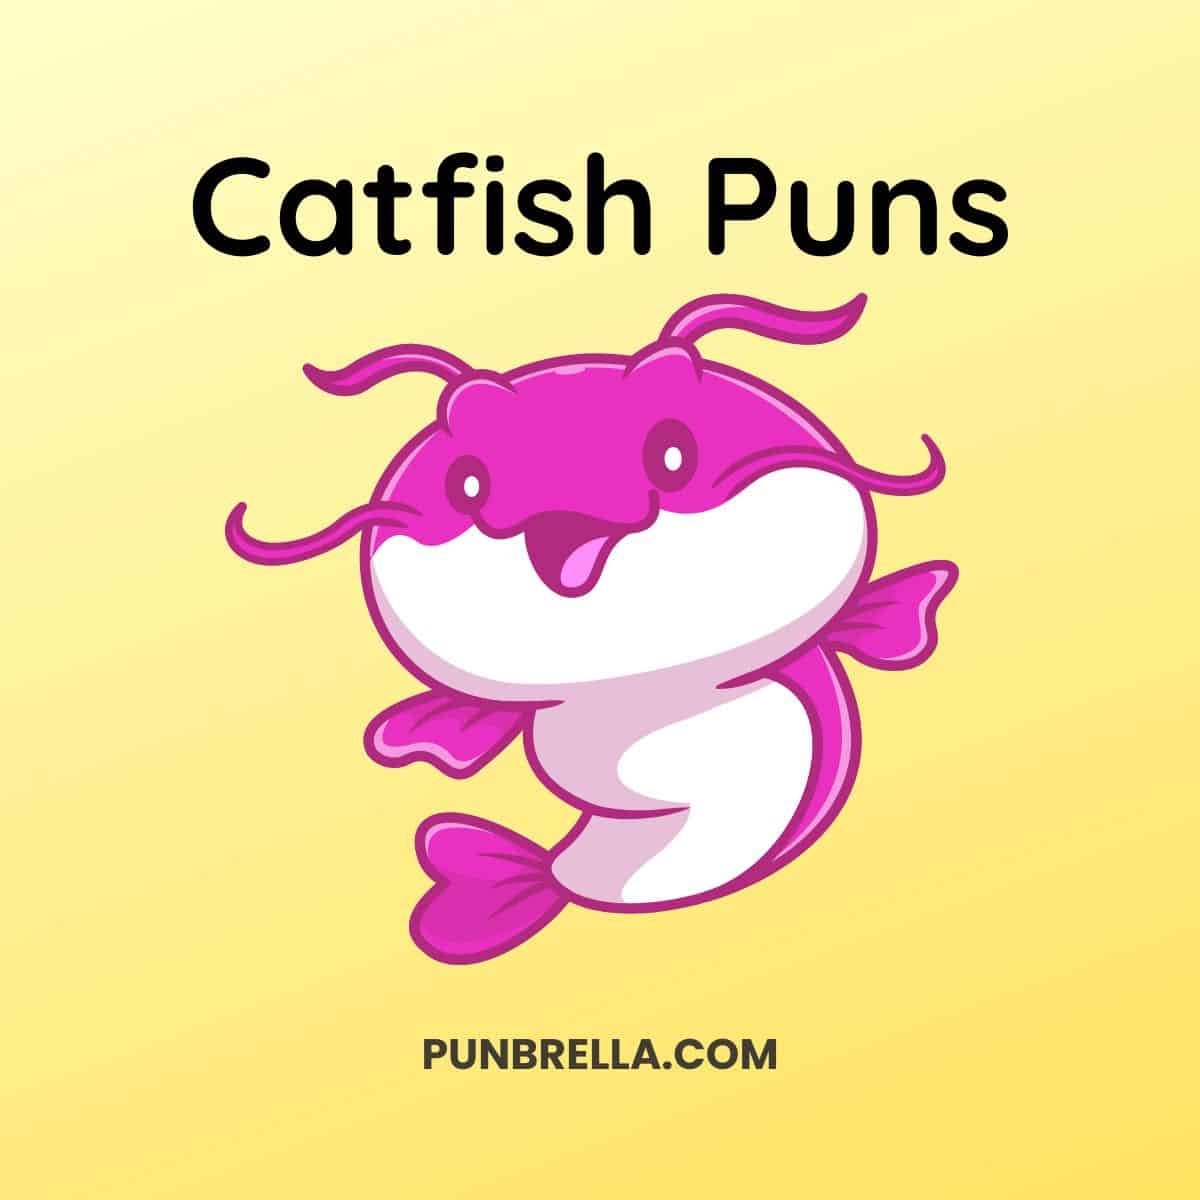 Catfish Puns - Kawaii cartoon catfish